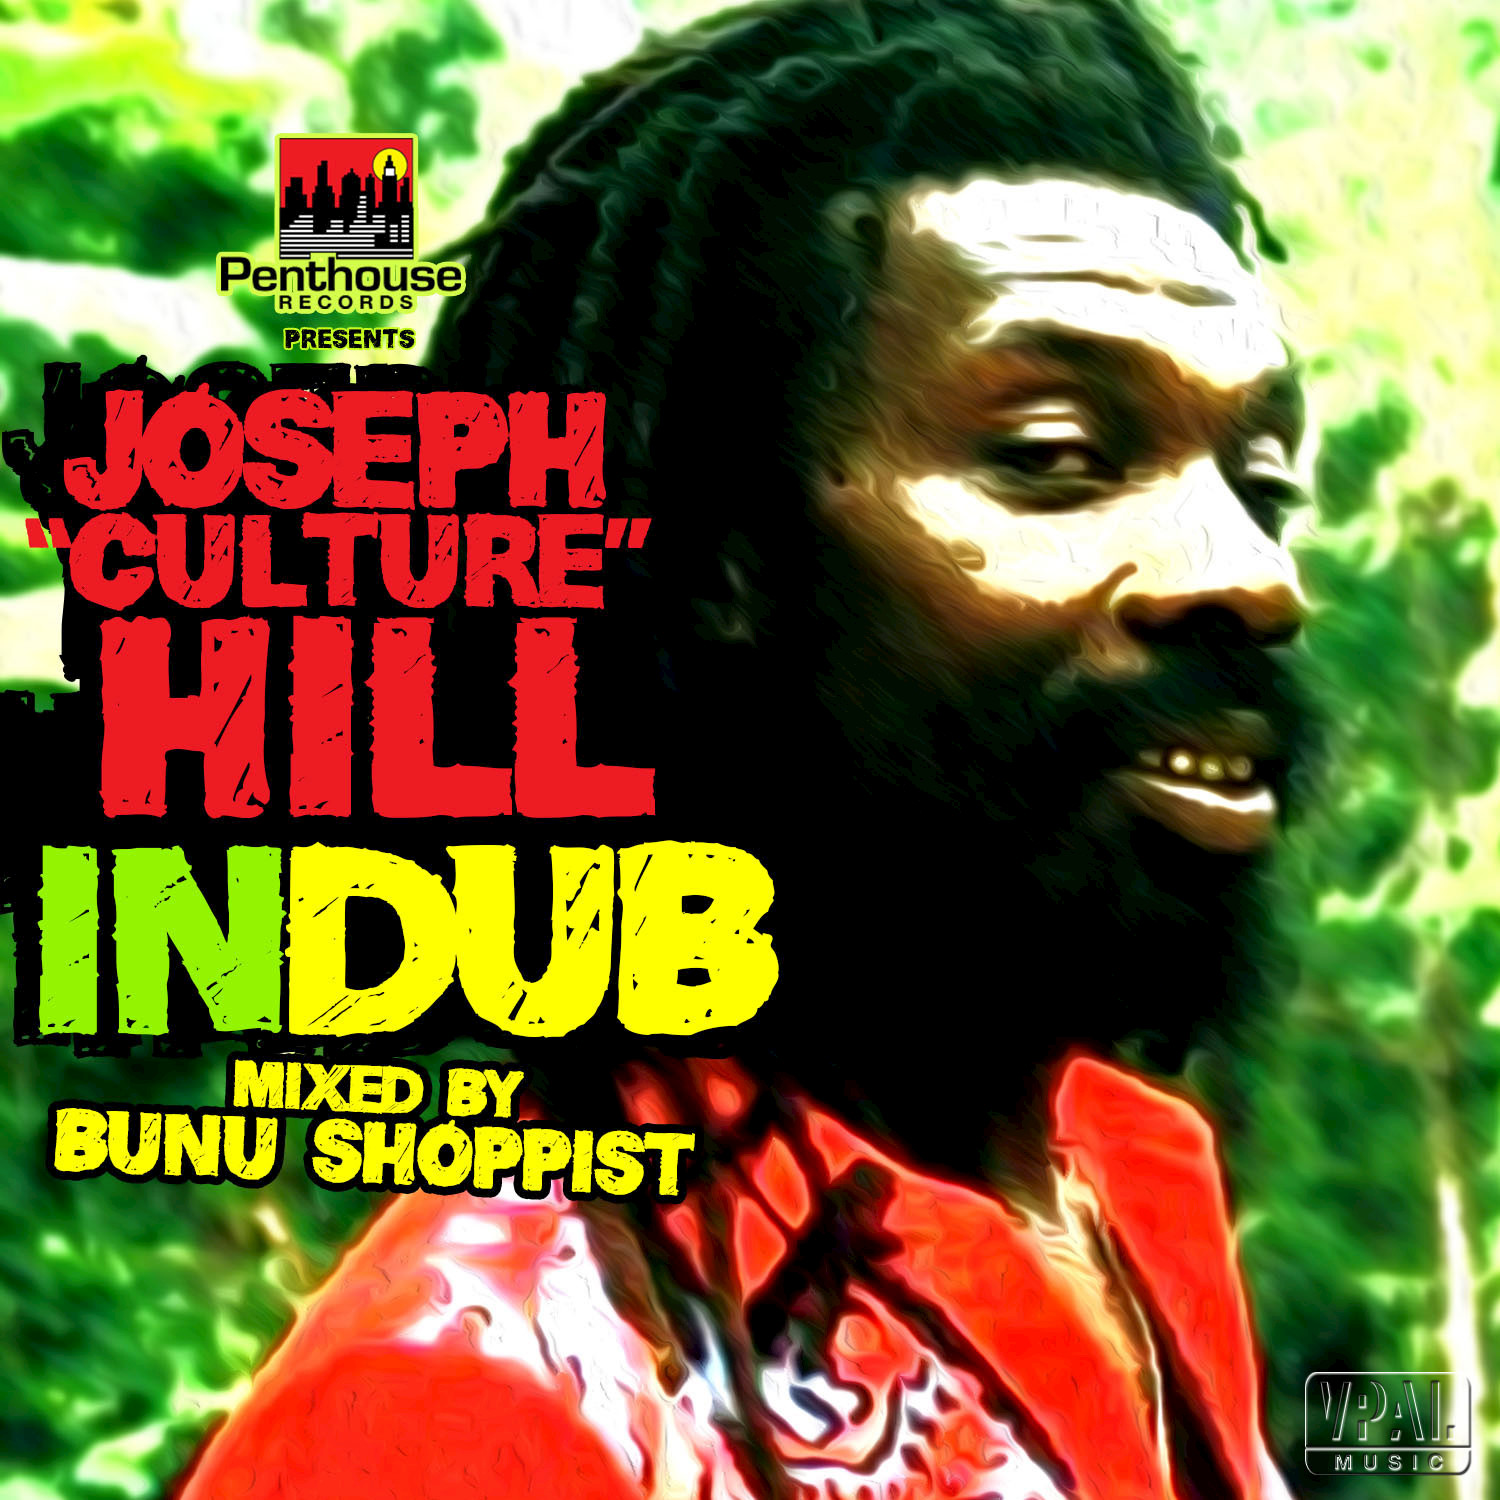 Jah See Dem Come (Bunu Shoppist Mix)